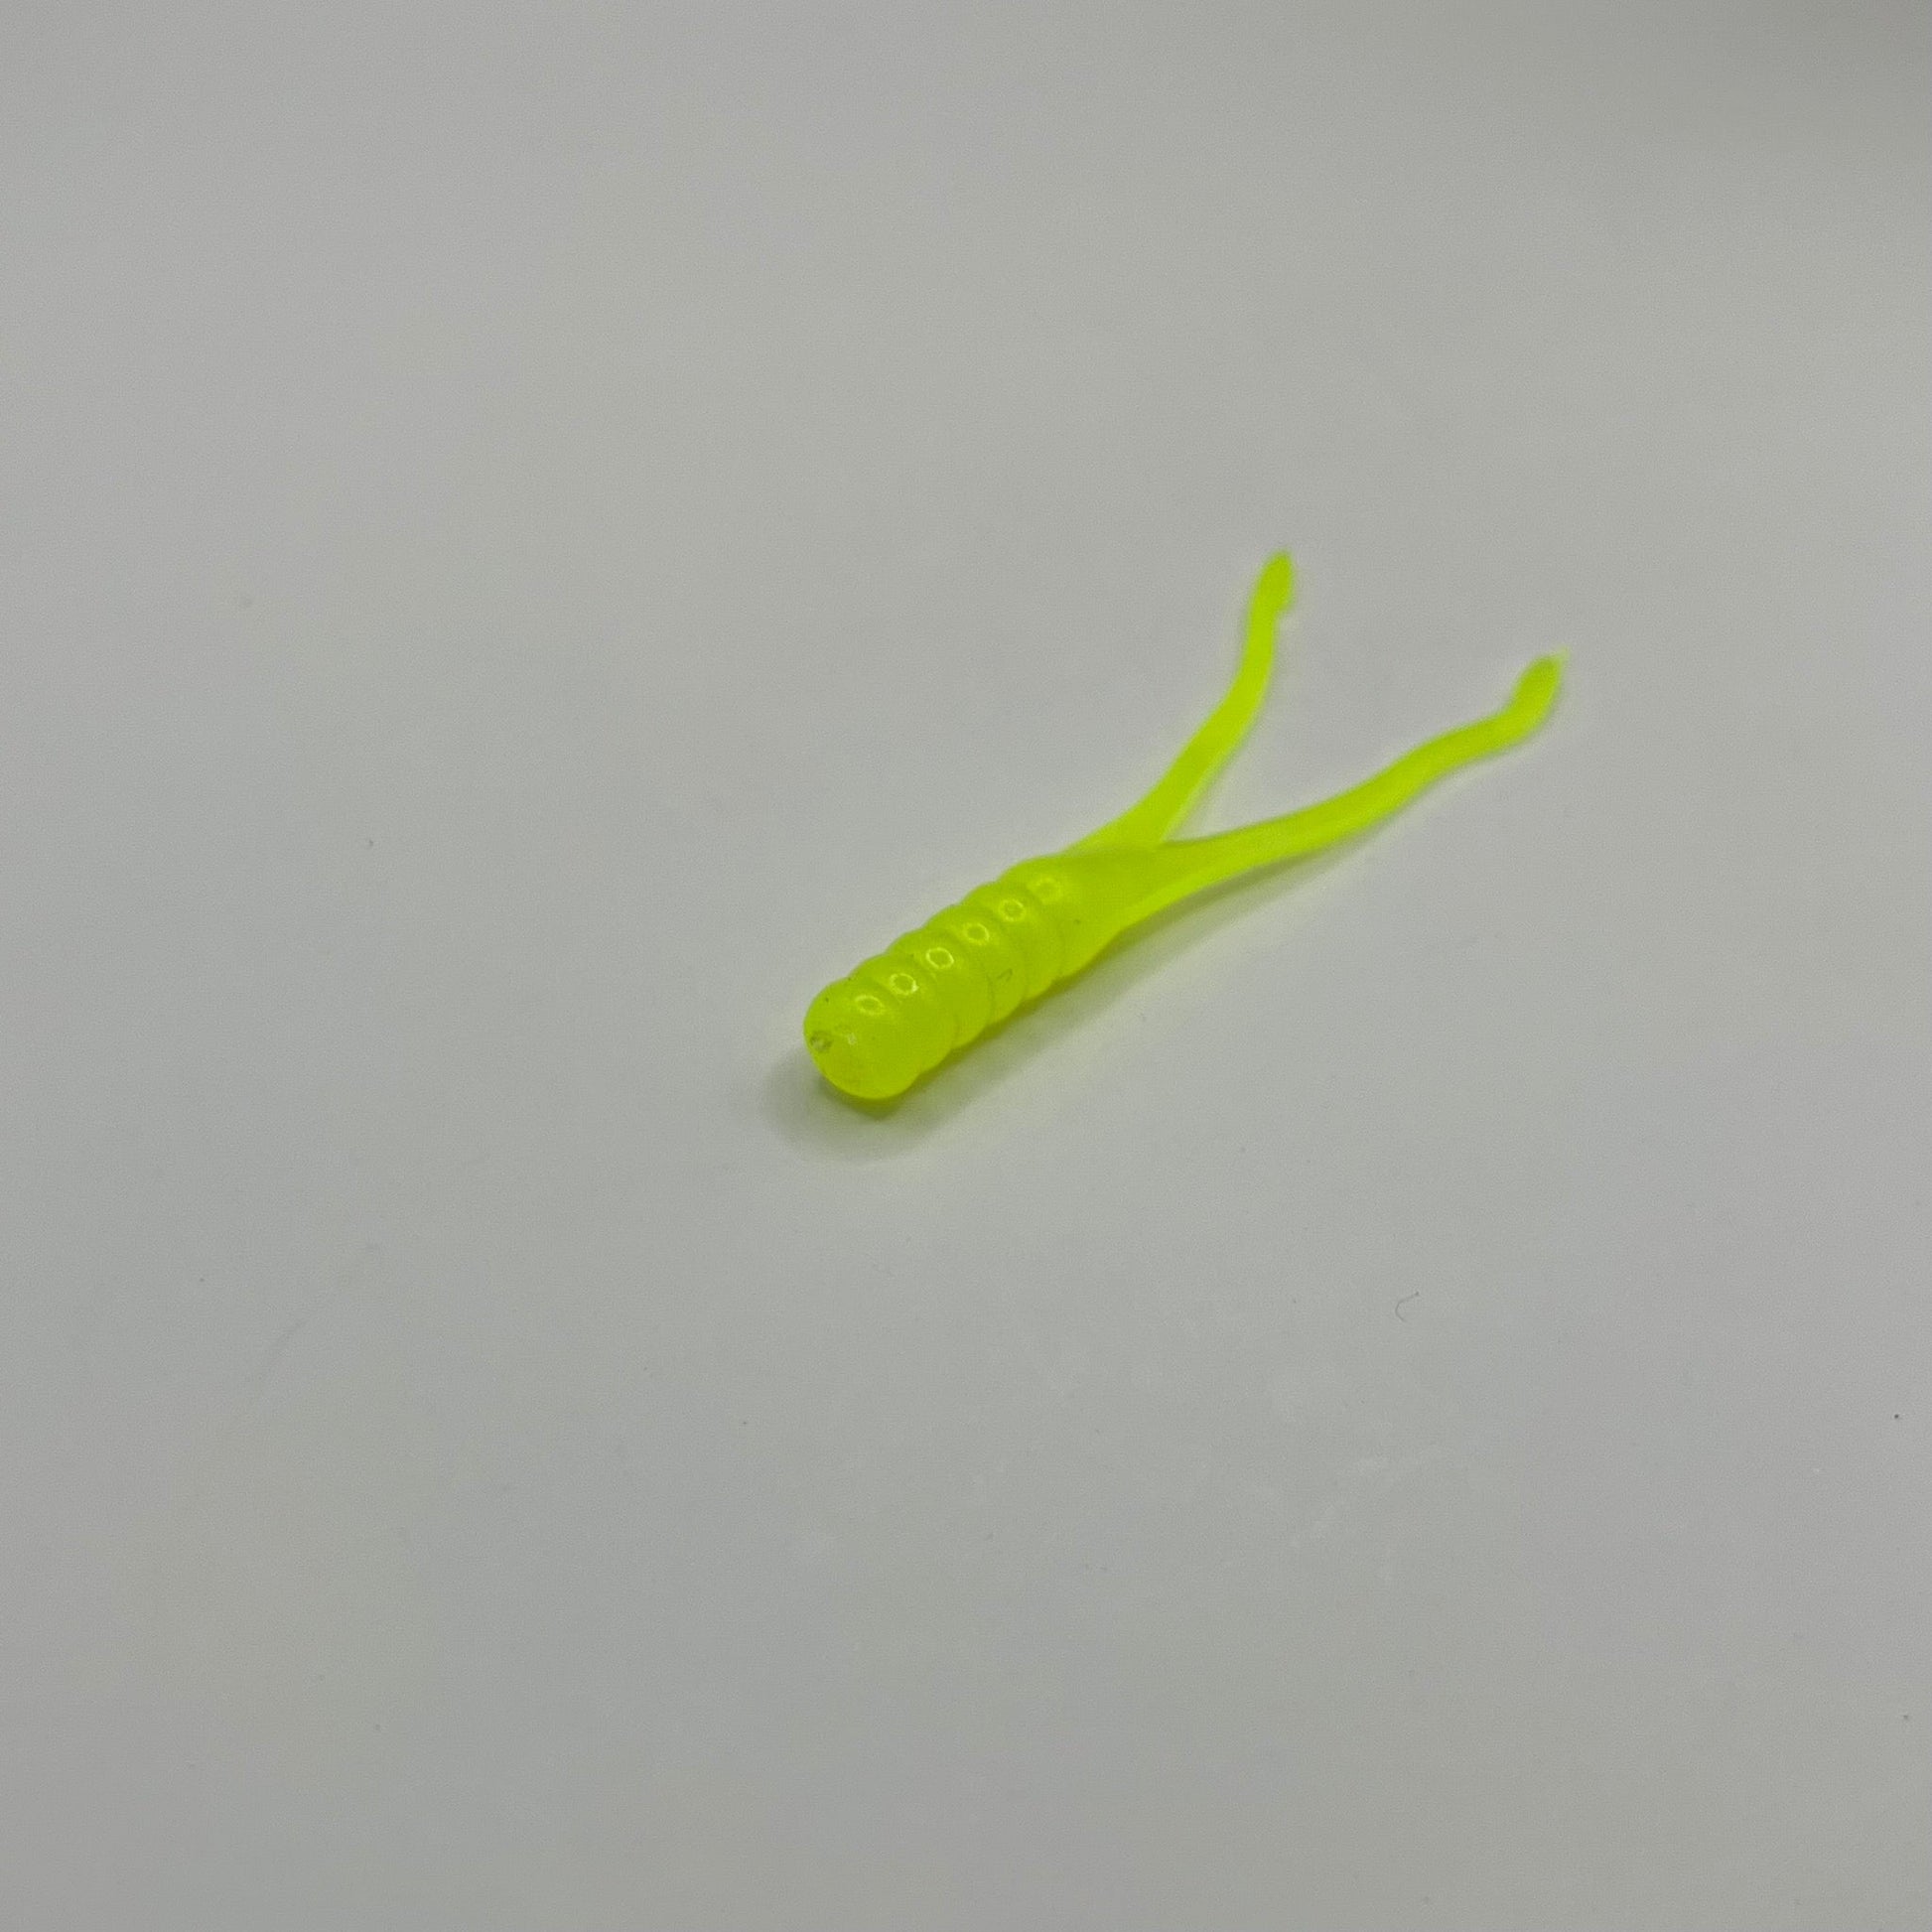 Chartreuse Crappie Beetle Bug 2.25" - Premium Soft Plastic Lure from JAC’D Bait Co - Shop now!